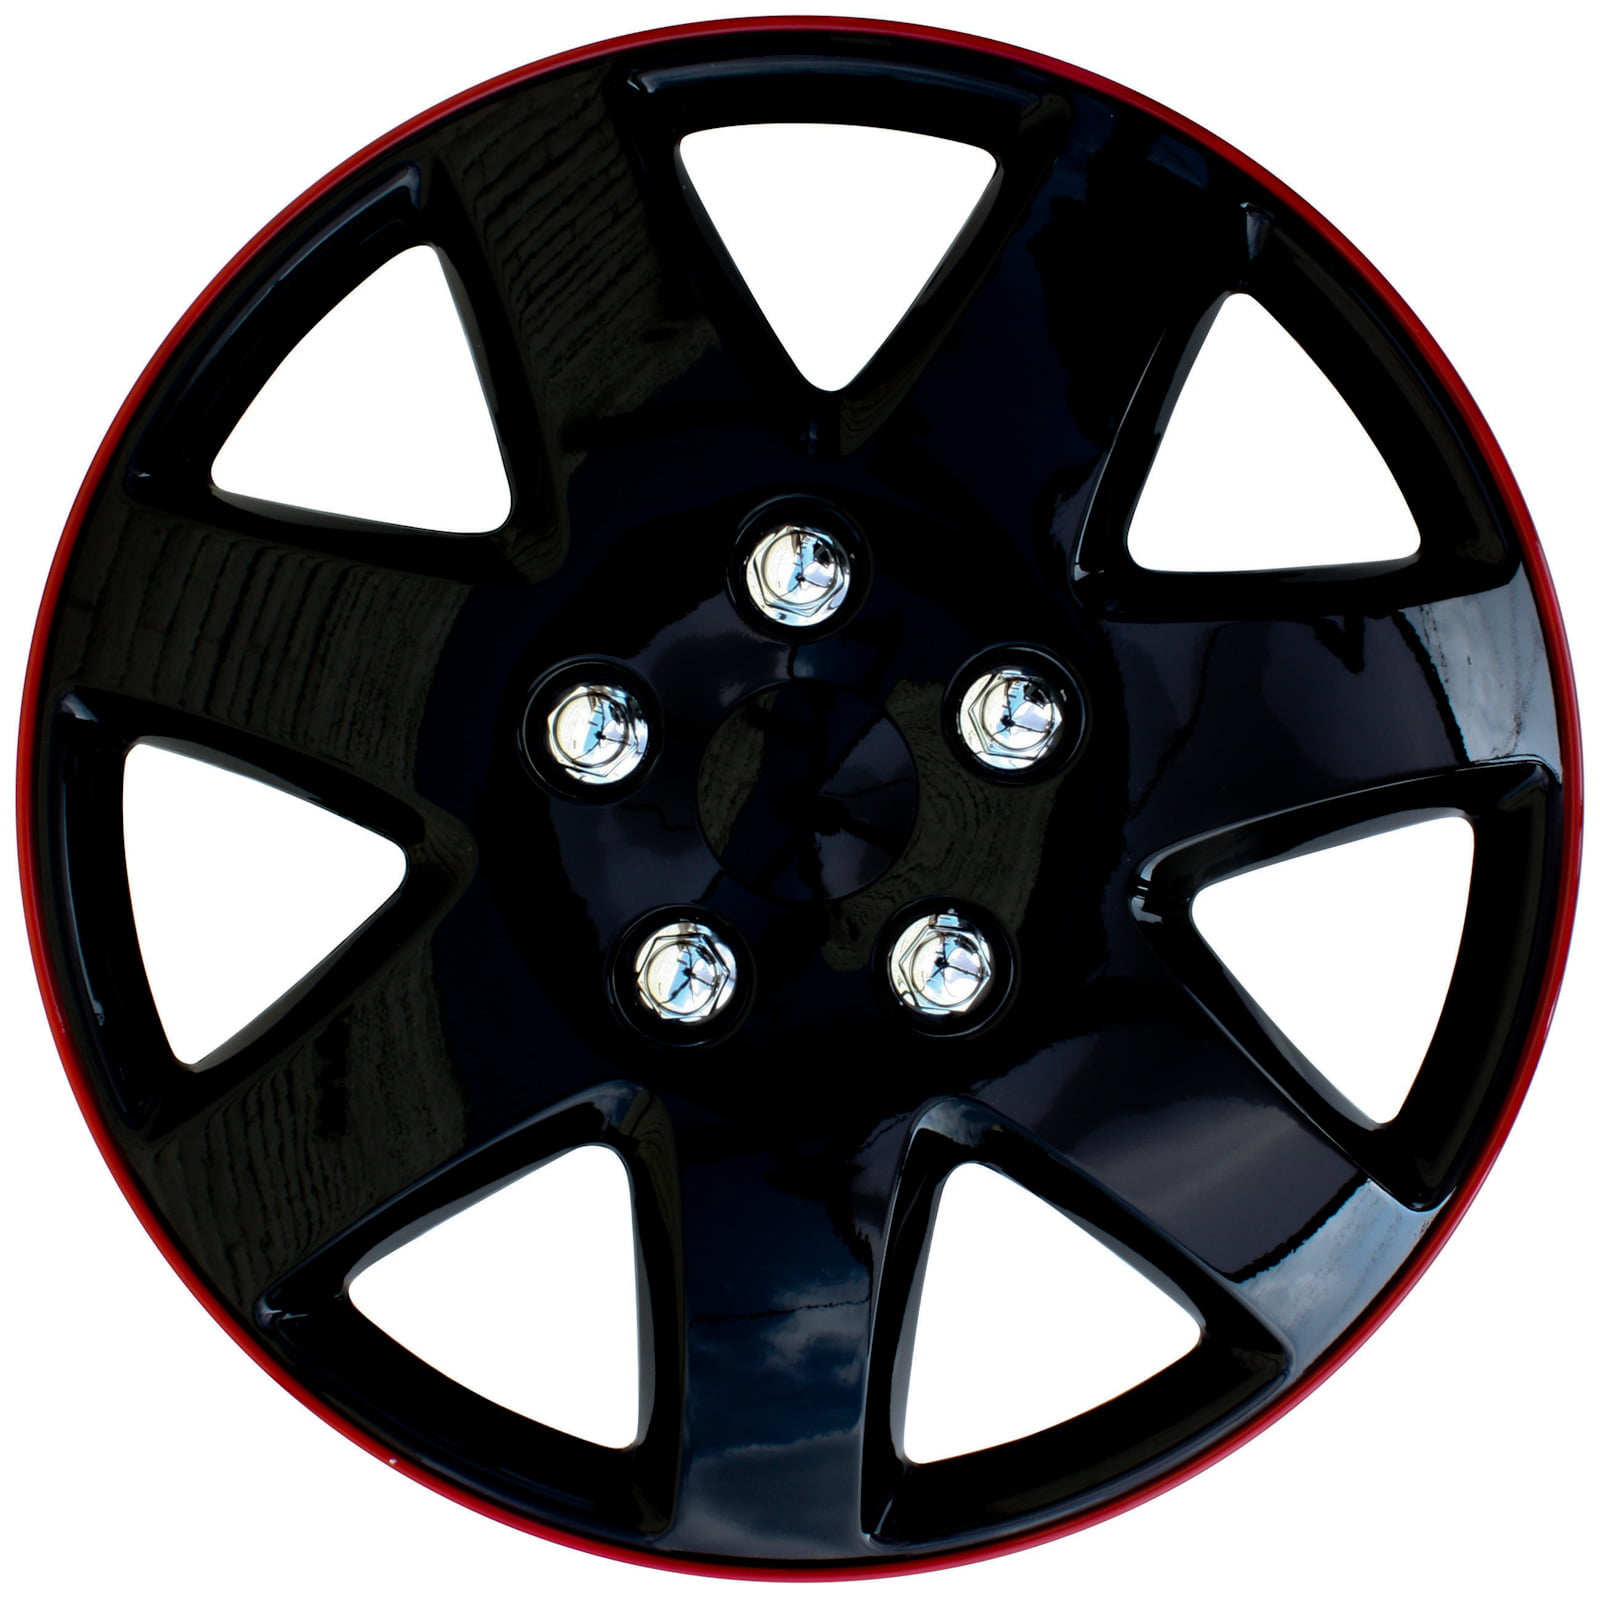 Lightning Black 14" Wheel Cover Hub Caps Set Ideal For Peugeot 207 